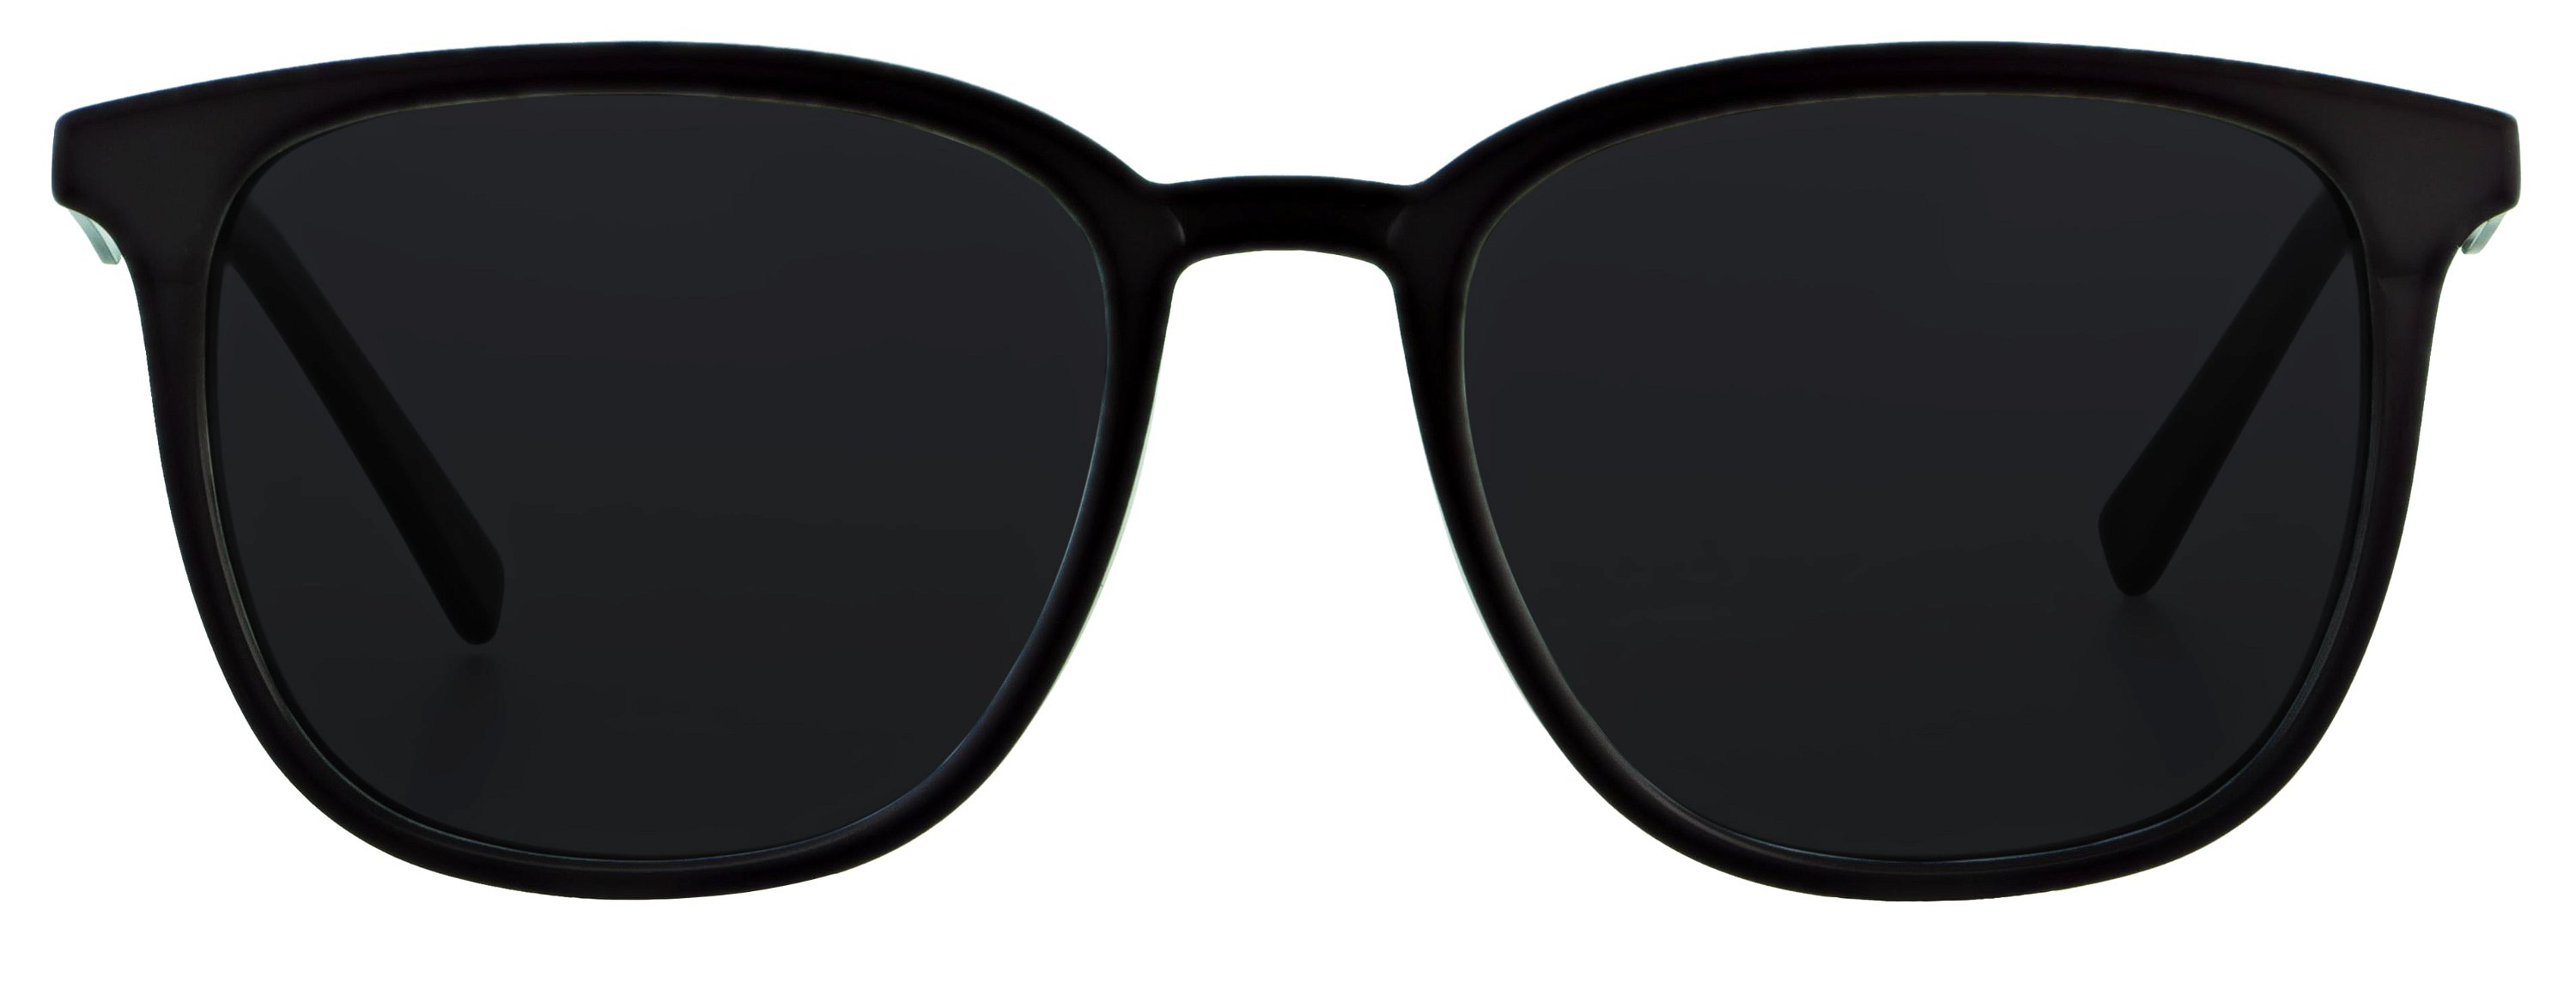 Das Bild zeigt die Sonnenbrille 141221 von der Marke Abele Optik in schwarz.